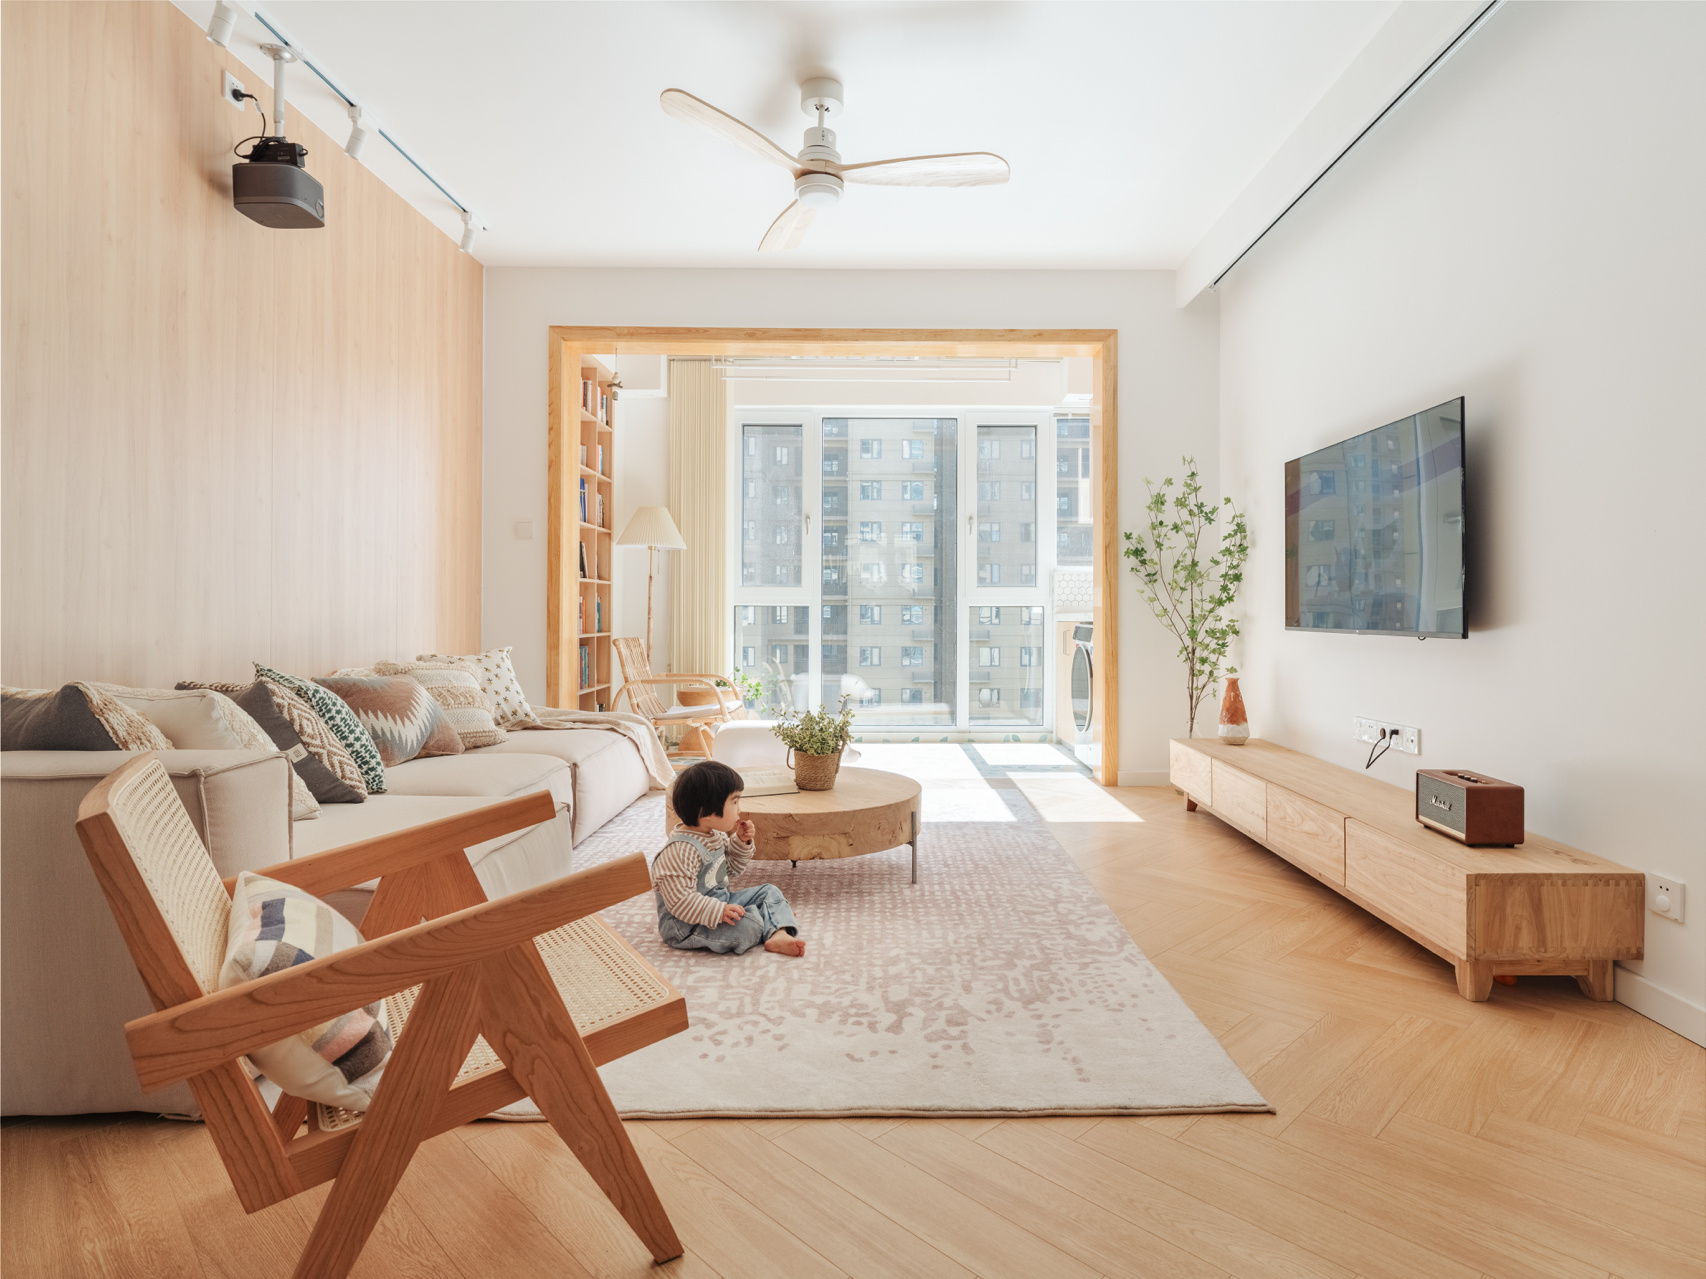 Thích mê căn hộ nhỏ phong cách nội thất Nhật Bản, tuy đơn giản nhưng lại ấm áp vô cùng - Ảnh 3.